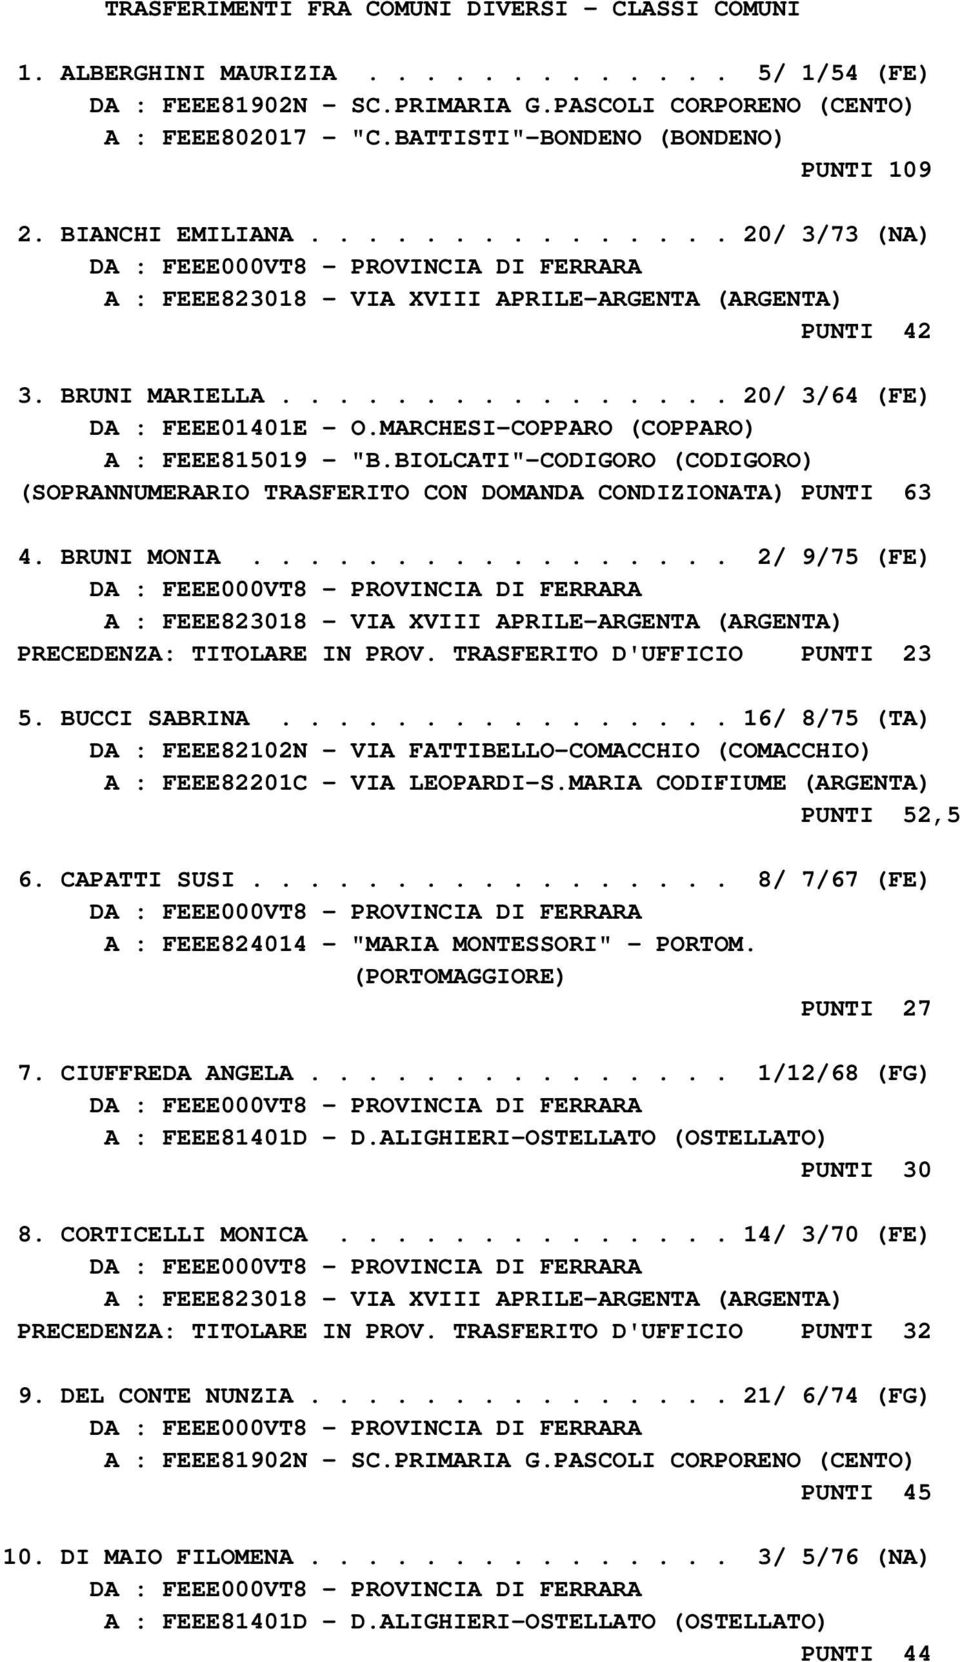 MARCHESI-COPPARO (COPPARO) A : FEEE815019 - "B.BIOLCATI"-CODIGORO (CODIGORO) (SOPRANNUMERARIO TRASFERITO CON DOMANDA CONDIZIONATA) PUNTI 63 4. BRUNI MONIA................. 2/ 9/75 (FE) PRECEDENZA: TITOLARE IN PROV.